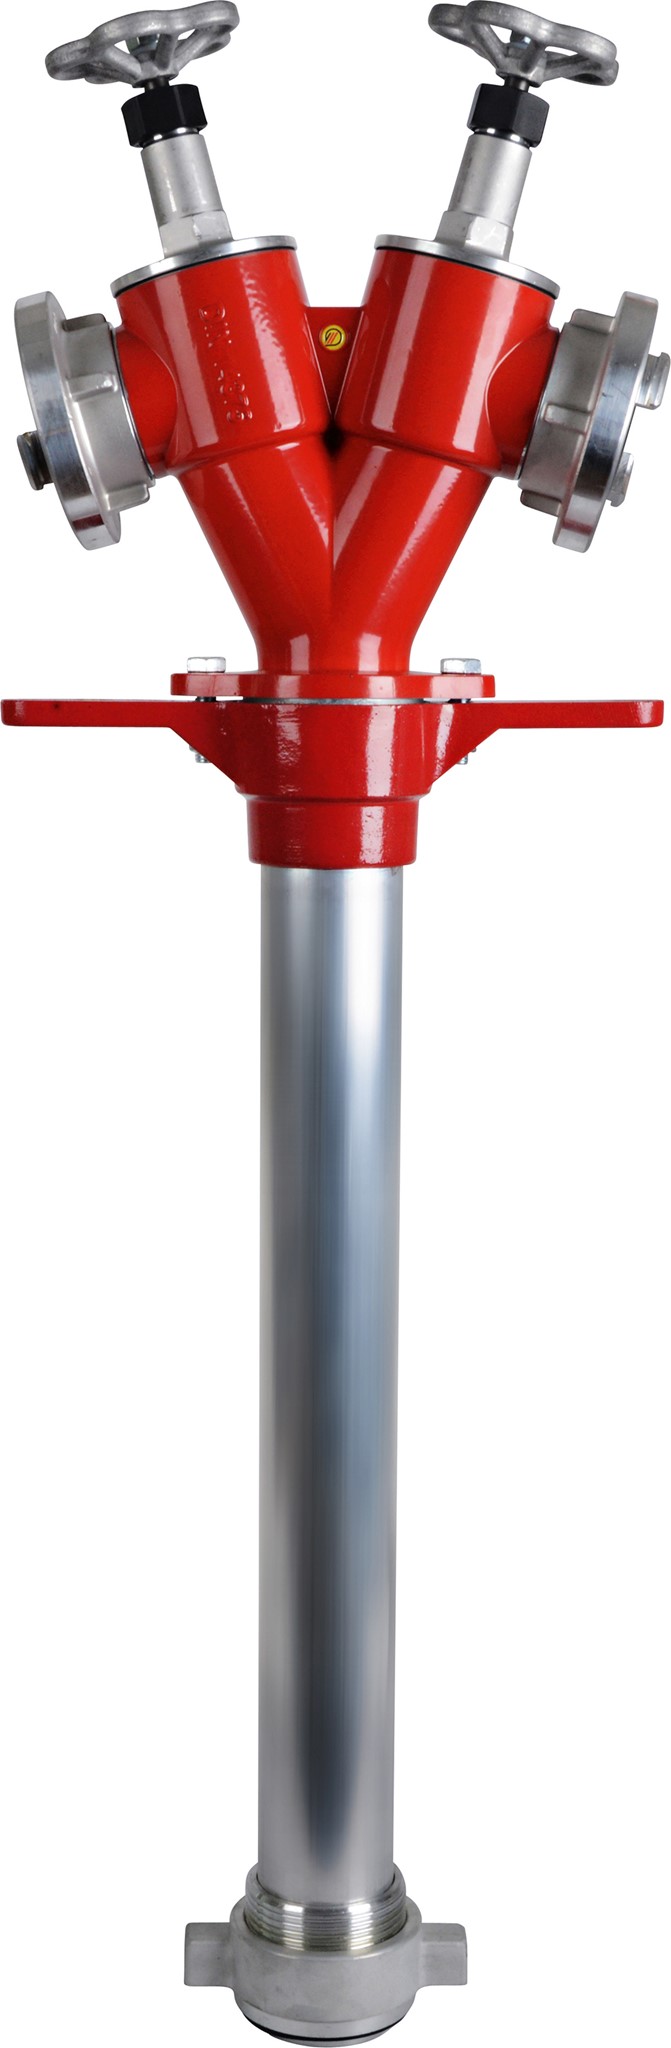 Picture of Hydrantenstandrohr für Unterflurhydranten DIN 3221, DN 80, 2xStorz C mit Absperrung